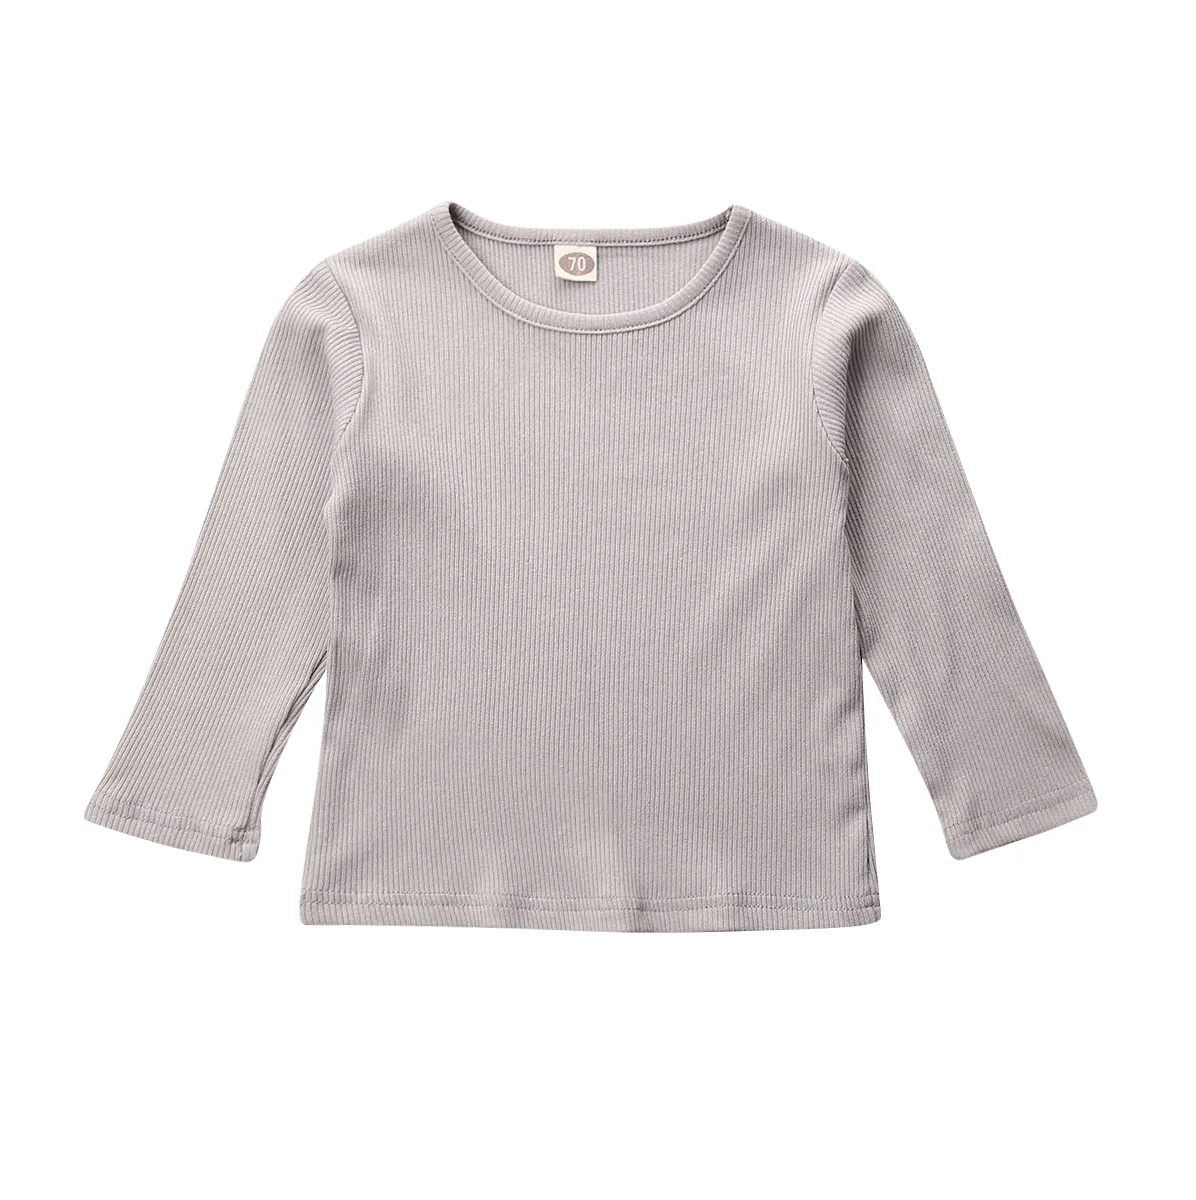 Emmaaby/простая одежда в полоску для новорожденных мальчиков и девочек топы с длинными рукавами, футболки, толстовки - Цвет: Серый